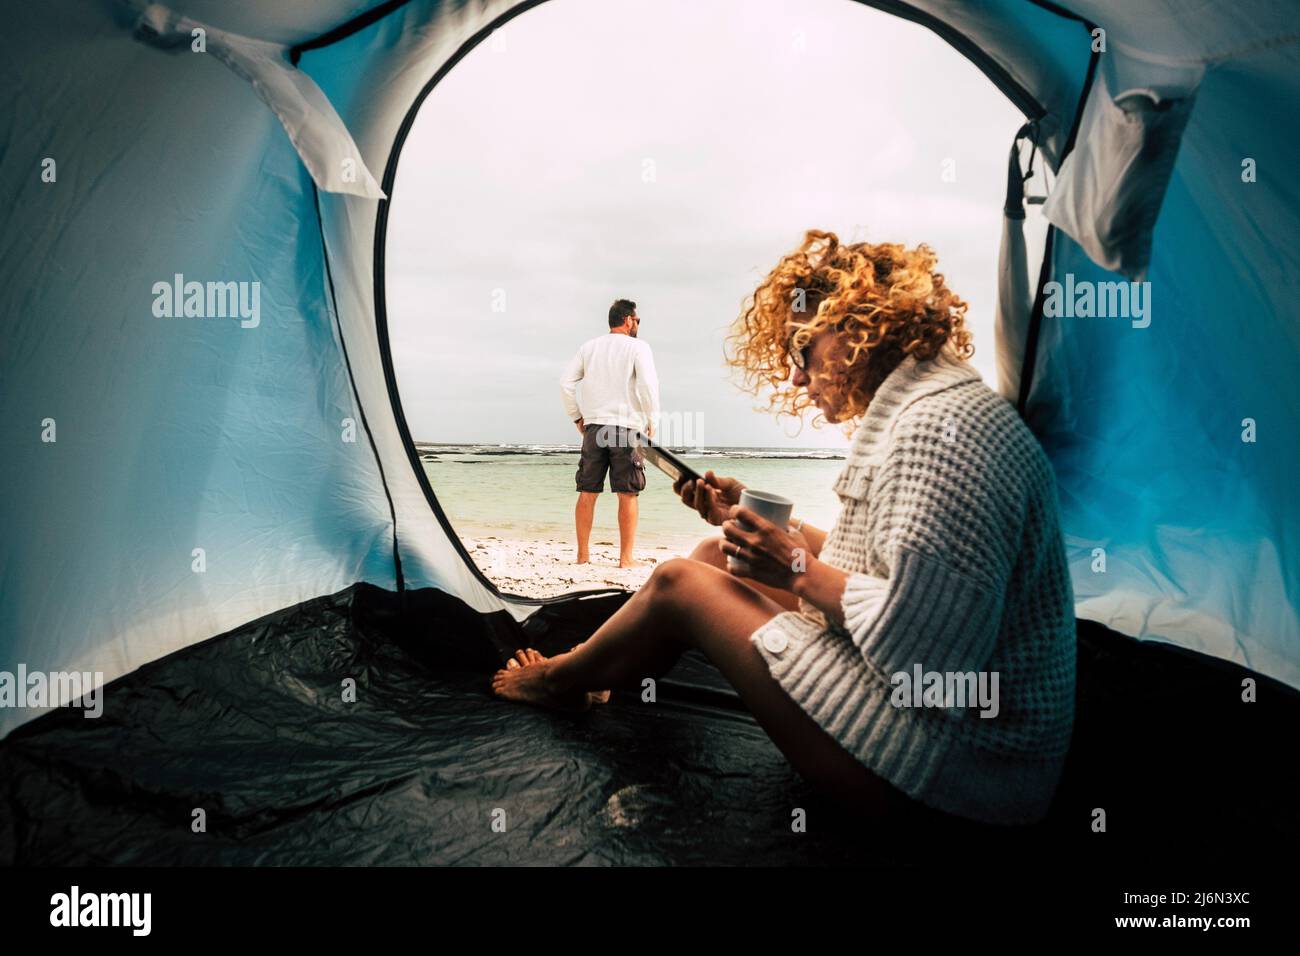 Camping tienda de vacaciones y pareja de adultos hombre y mujer disfrutando de la libertad en la playa - viajes wanderlust estilo de vida personas - mujer con phnemessaging Foto de stock